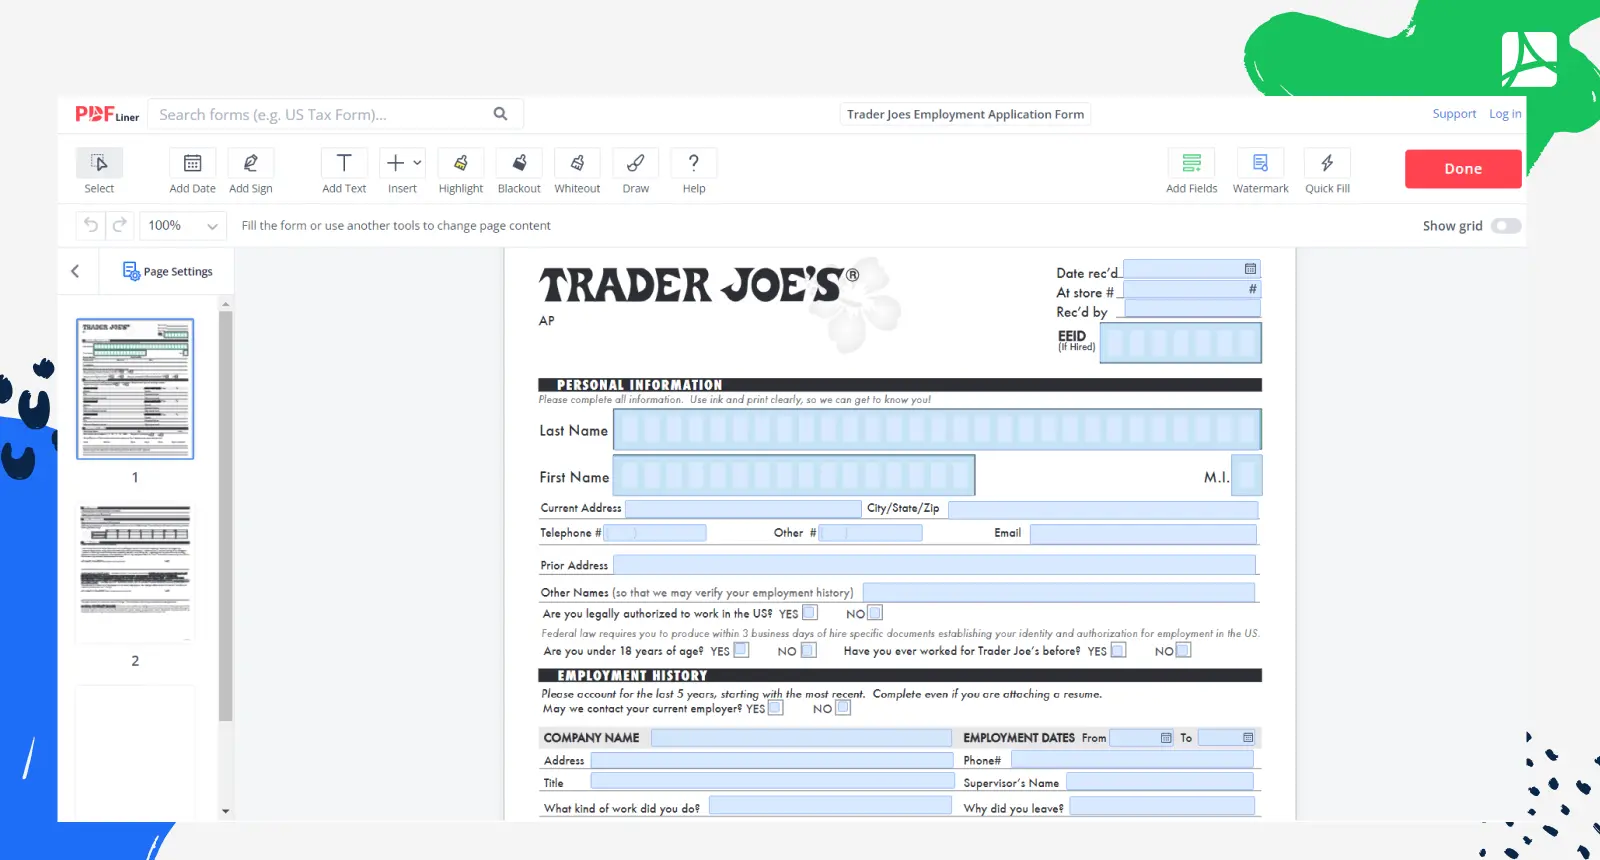 Trader Joes Employment Application Form Screenshot